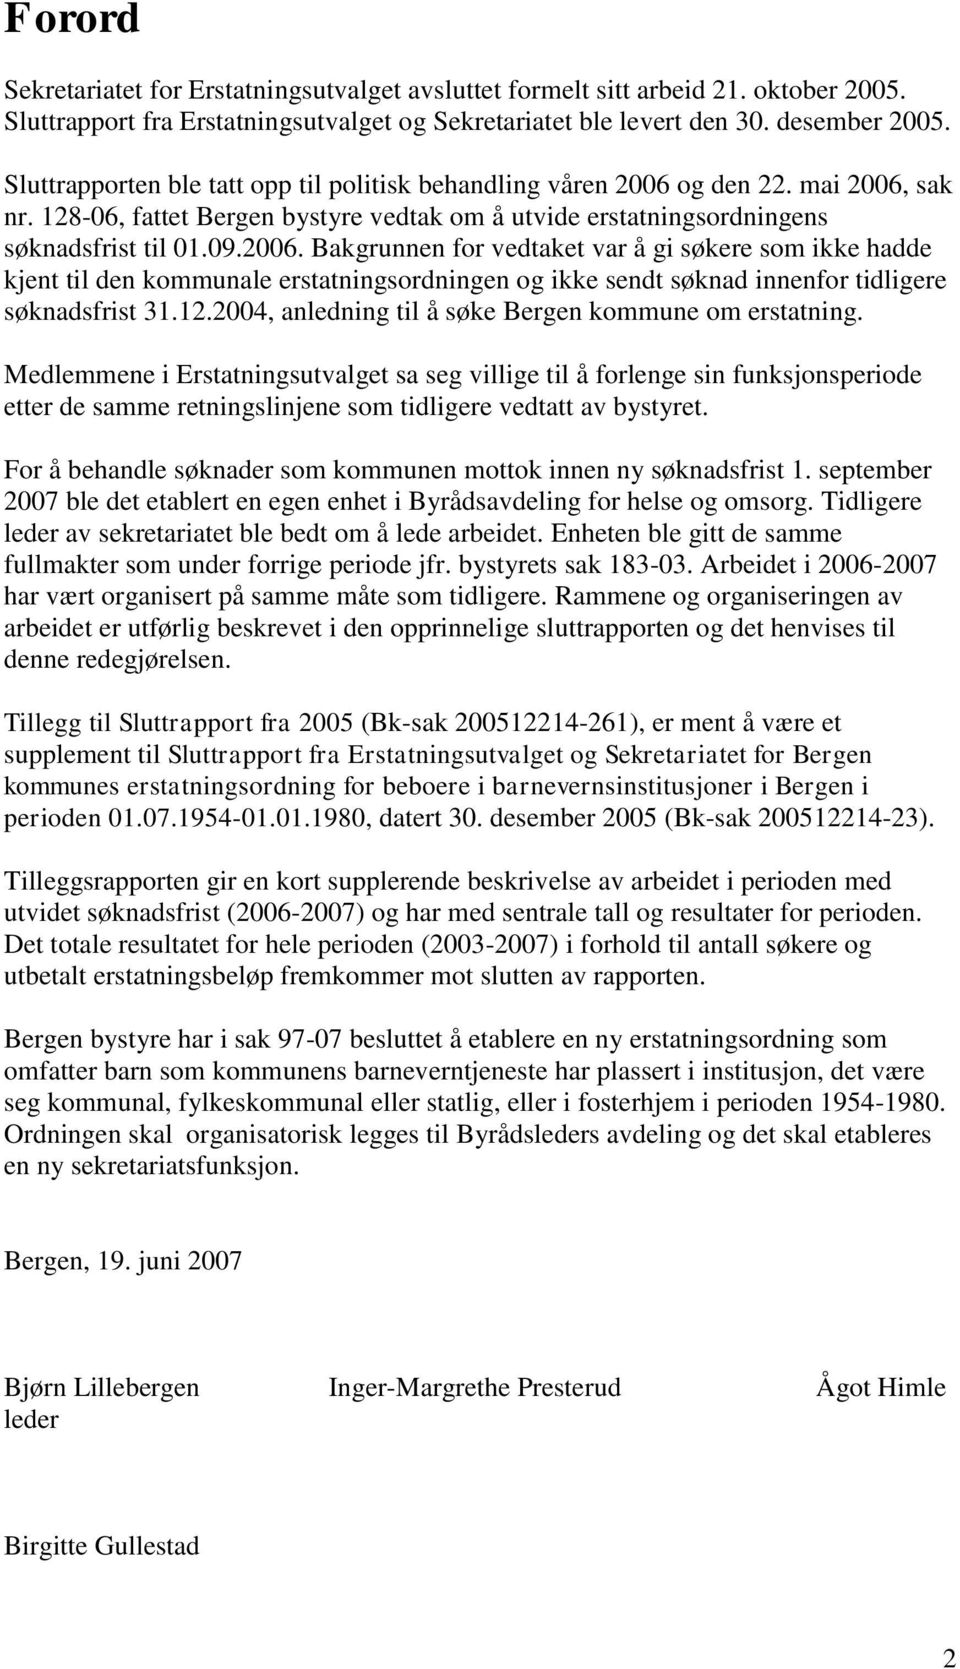 og den 22. mai 2006, sak nr. 128-06, fattet Bergen bystyre vedtak om å utvide erstatningsordningens søknadsfrist til 01.09.2006. Bakgrunnen for vedtaket var å gi søkere som ikke hadde kjent til den kommunale erstatningsordningen og ikke sendt søknad innenfor tidligere søknadsfrist 31.